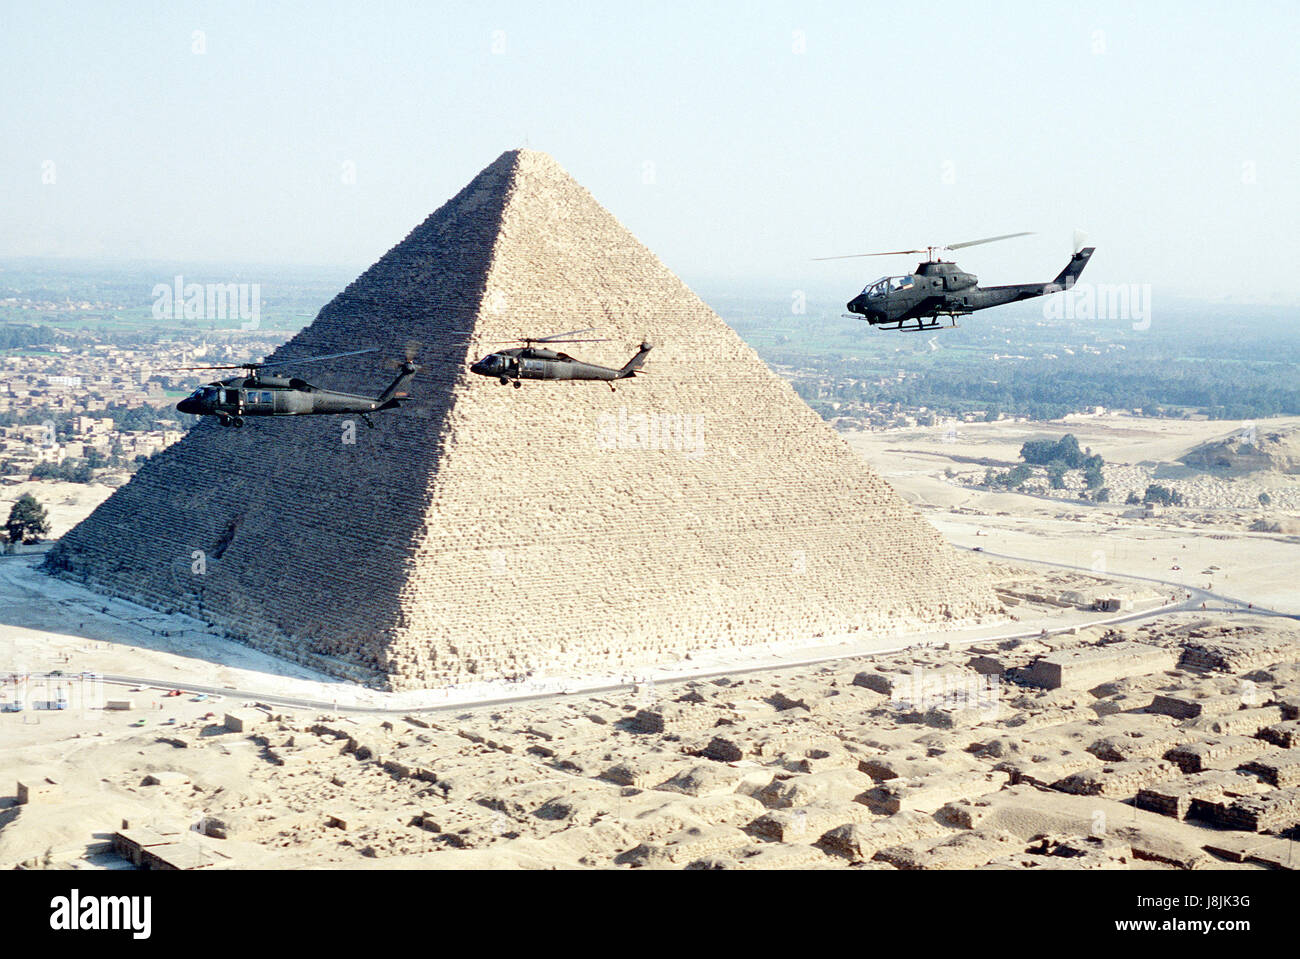 Les hélicoptères militaires battant en face d'une pyramide en Egypte Banque D'Images